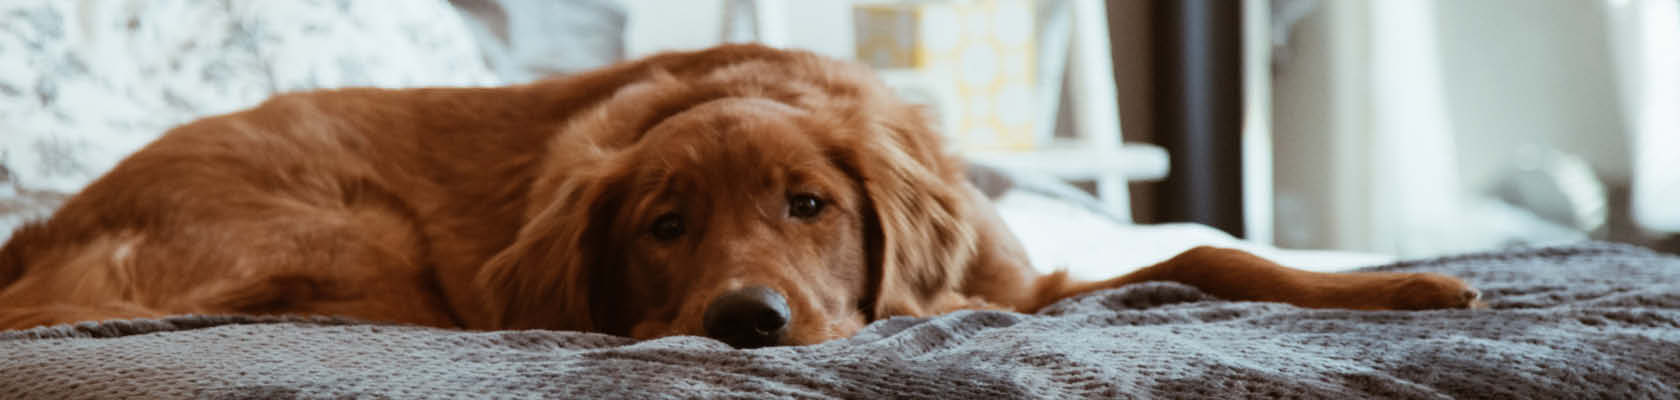 sorg definitive I modsætning til Utryghed og stress hos hund